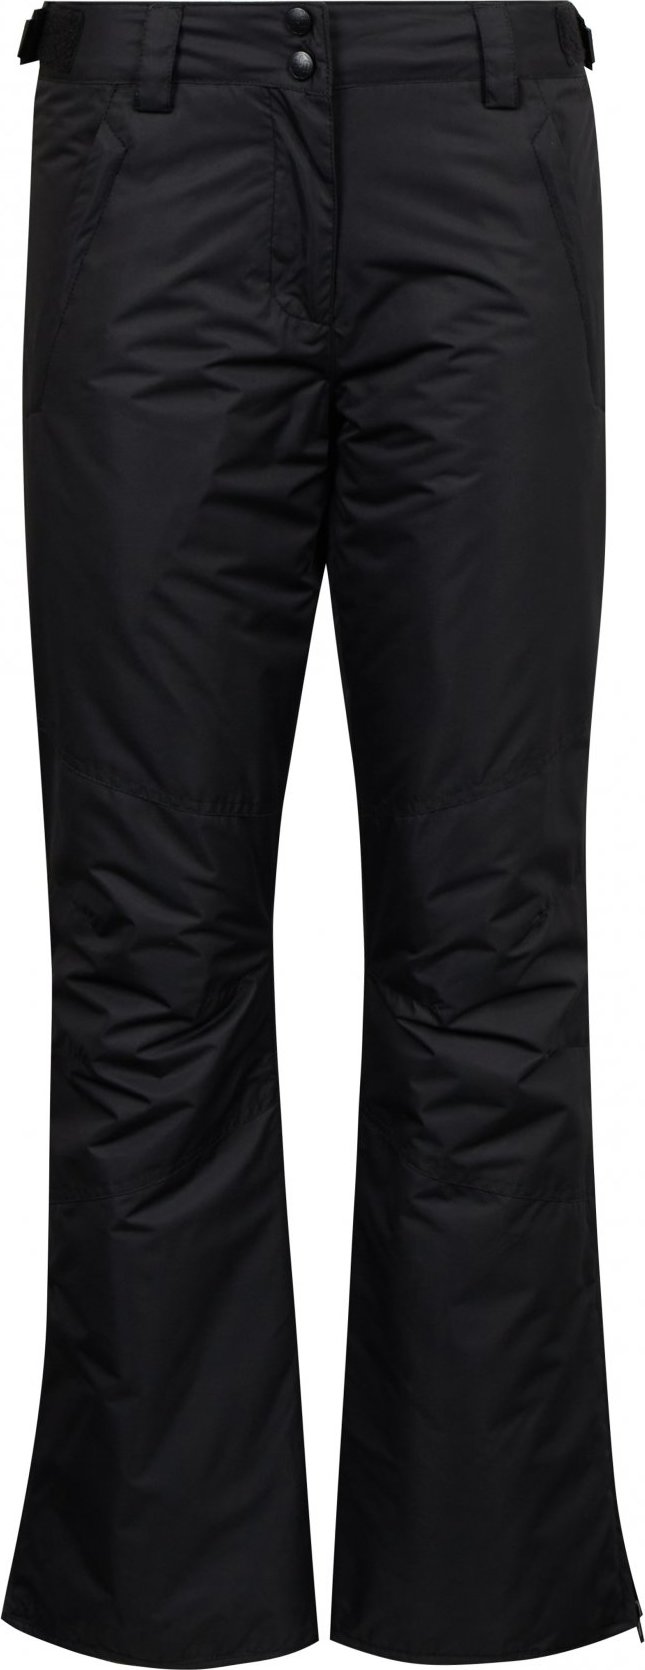 Dámské lyžařské kalhoty SAM 73 Indy černé Velikost: XS